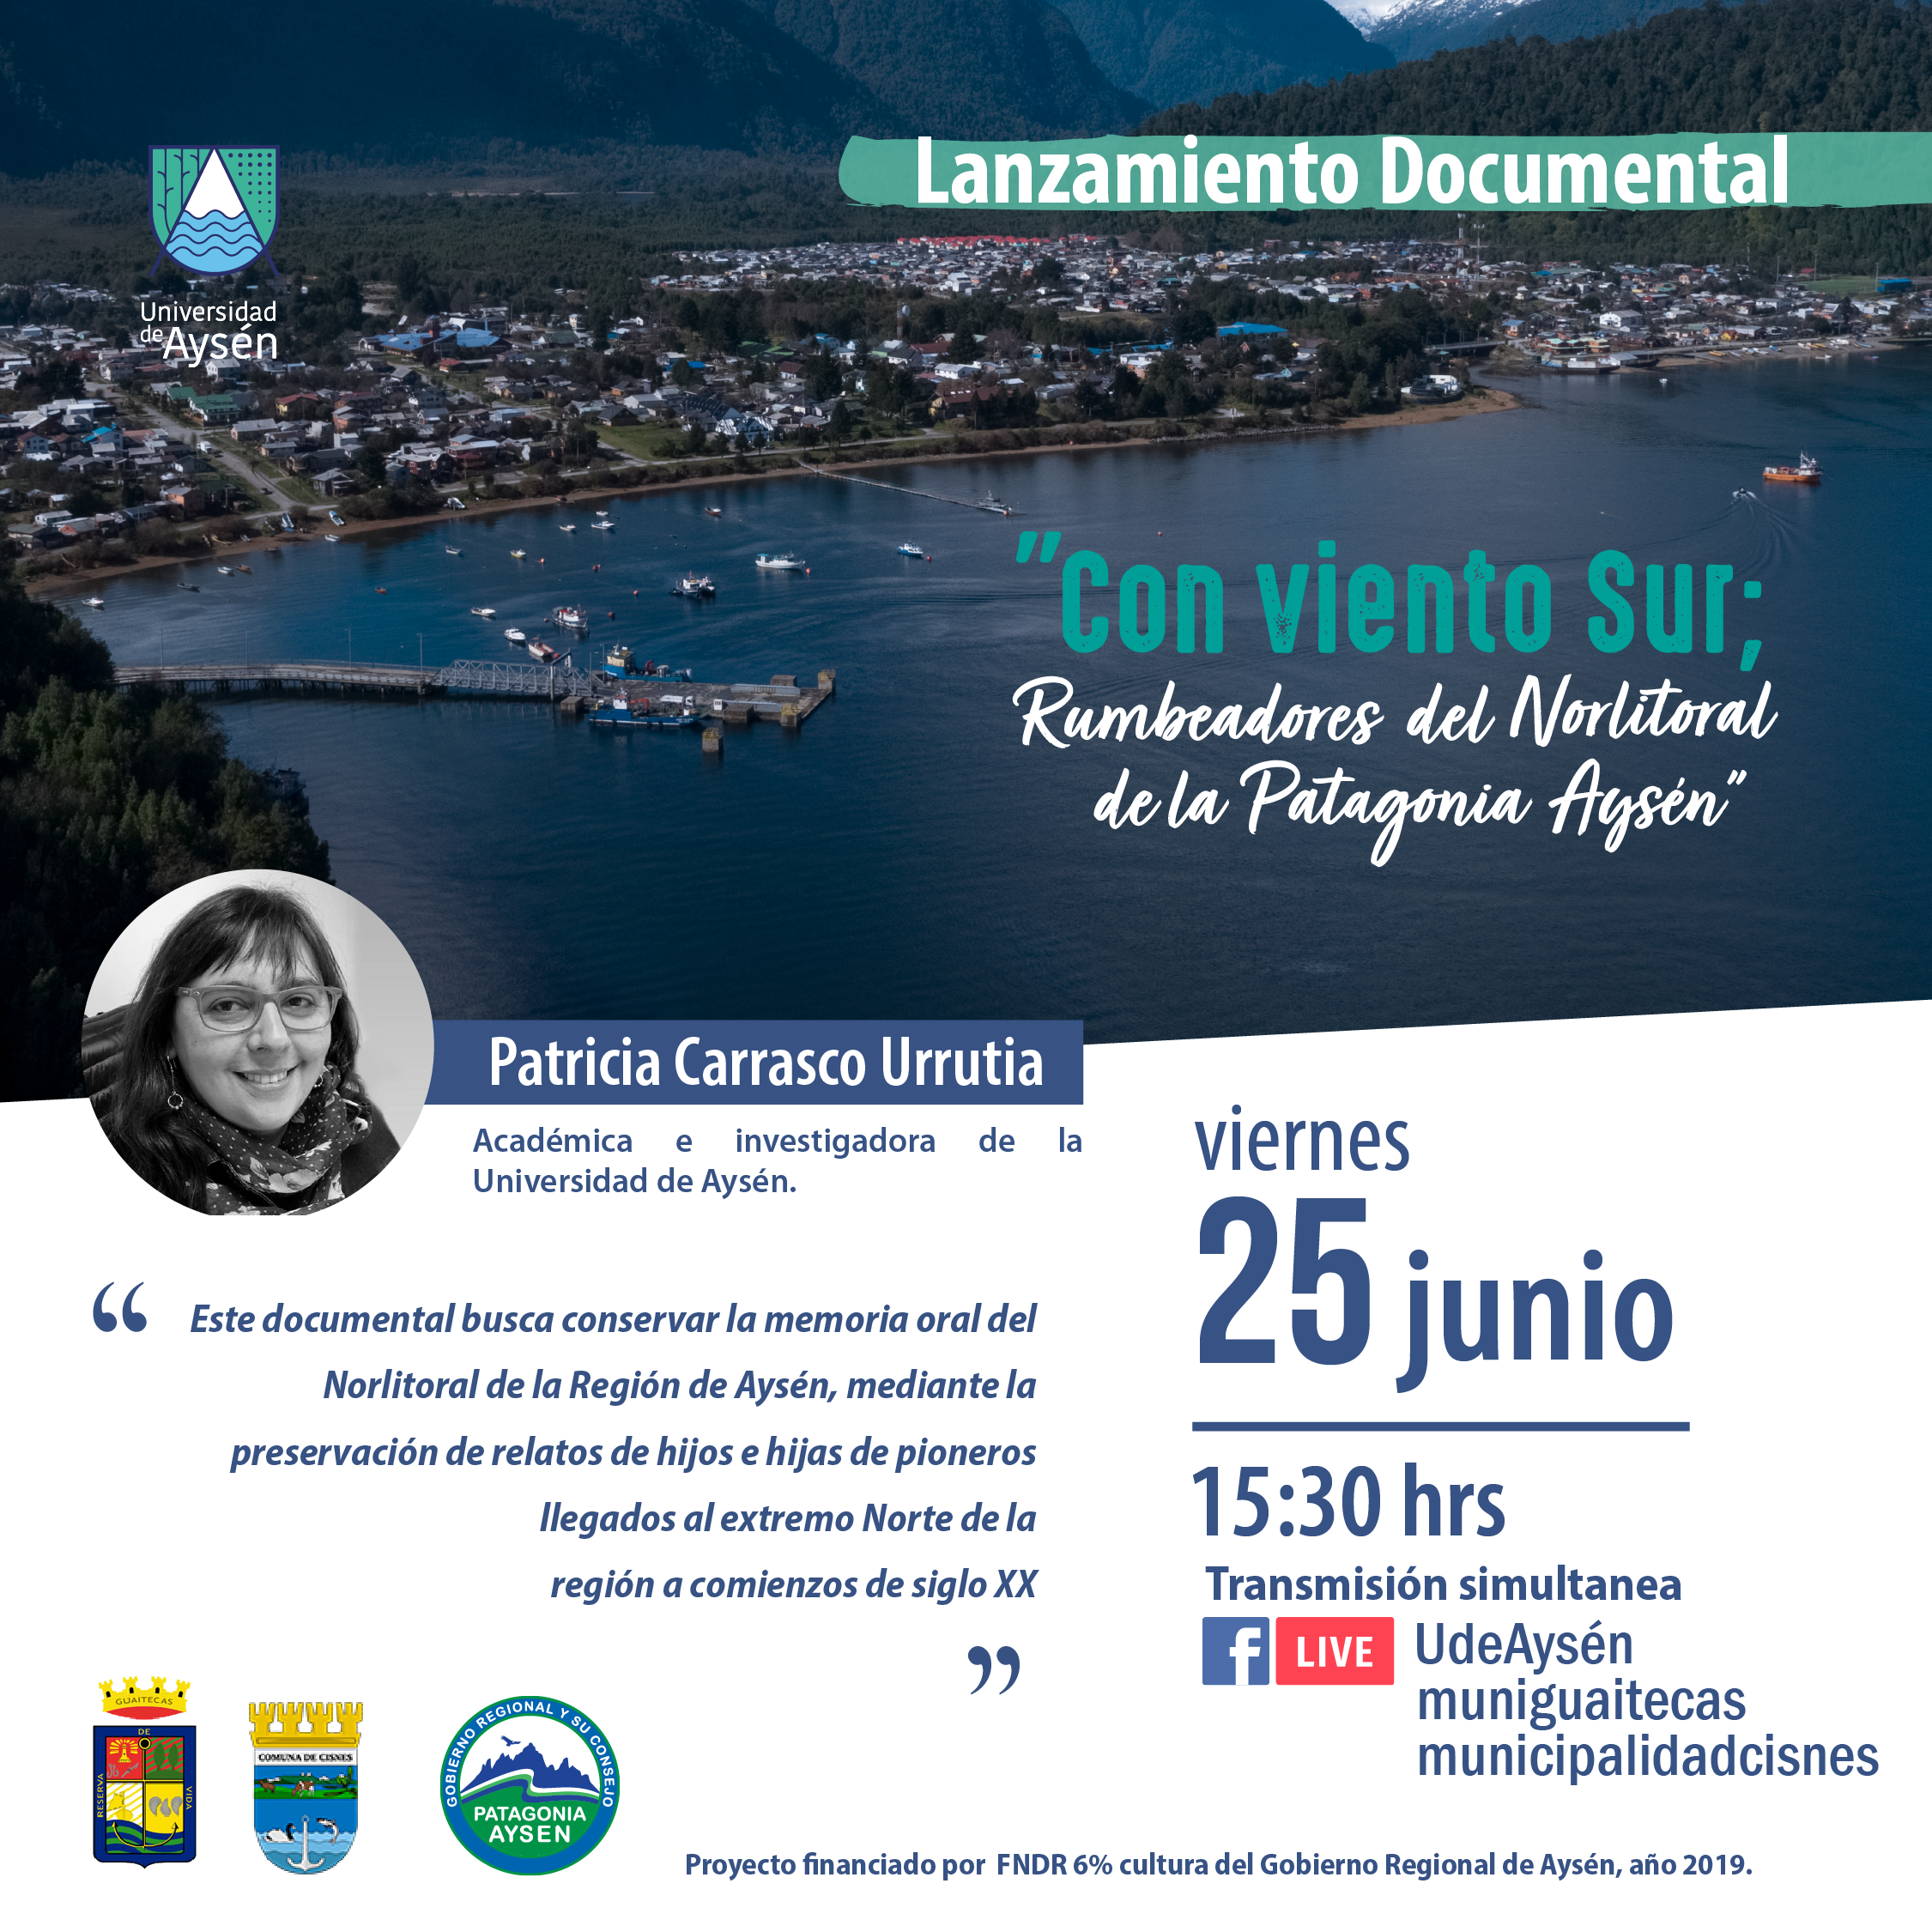 Lanzamiento Documental "Con Viento sur: Rumbeadores del Norlitoral de la Patagonia Aysén"